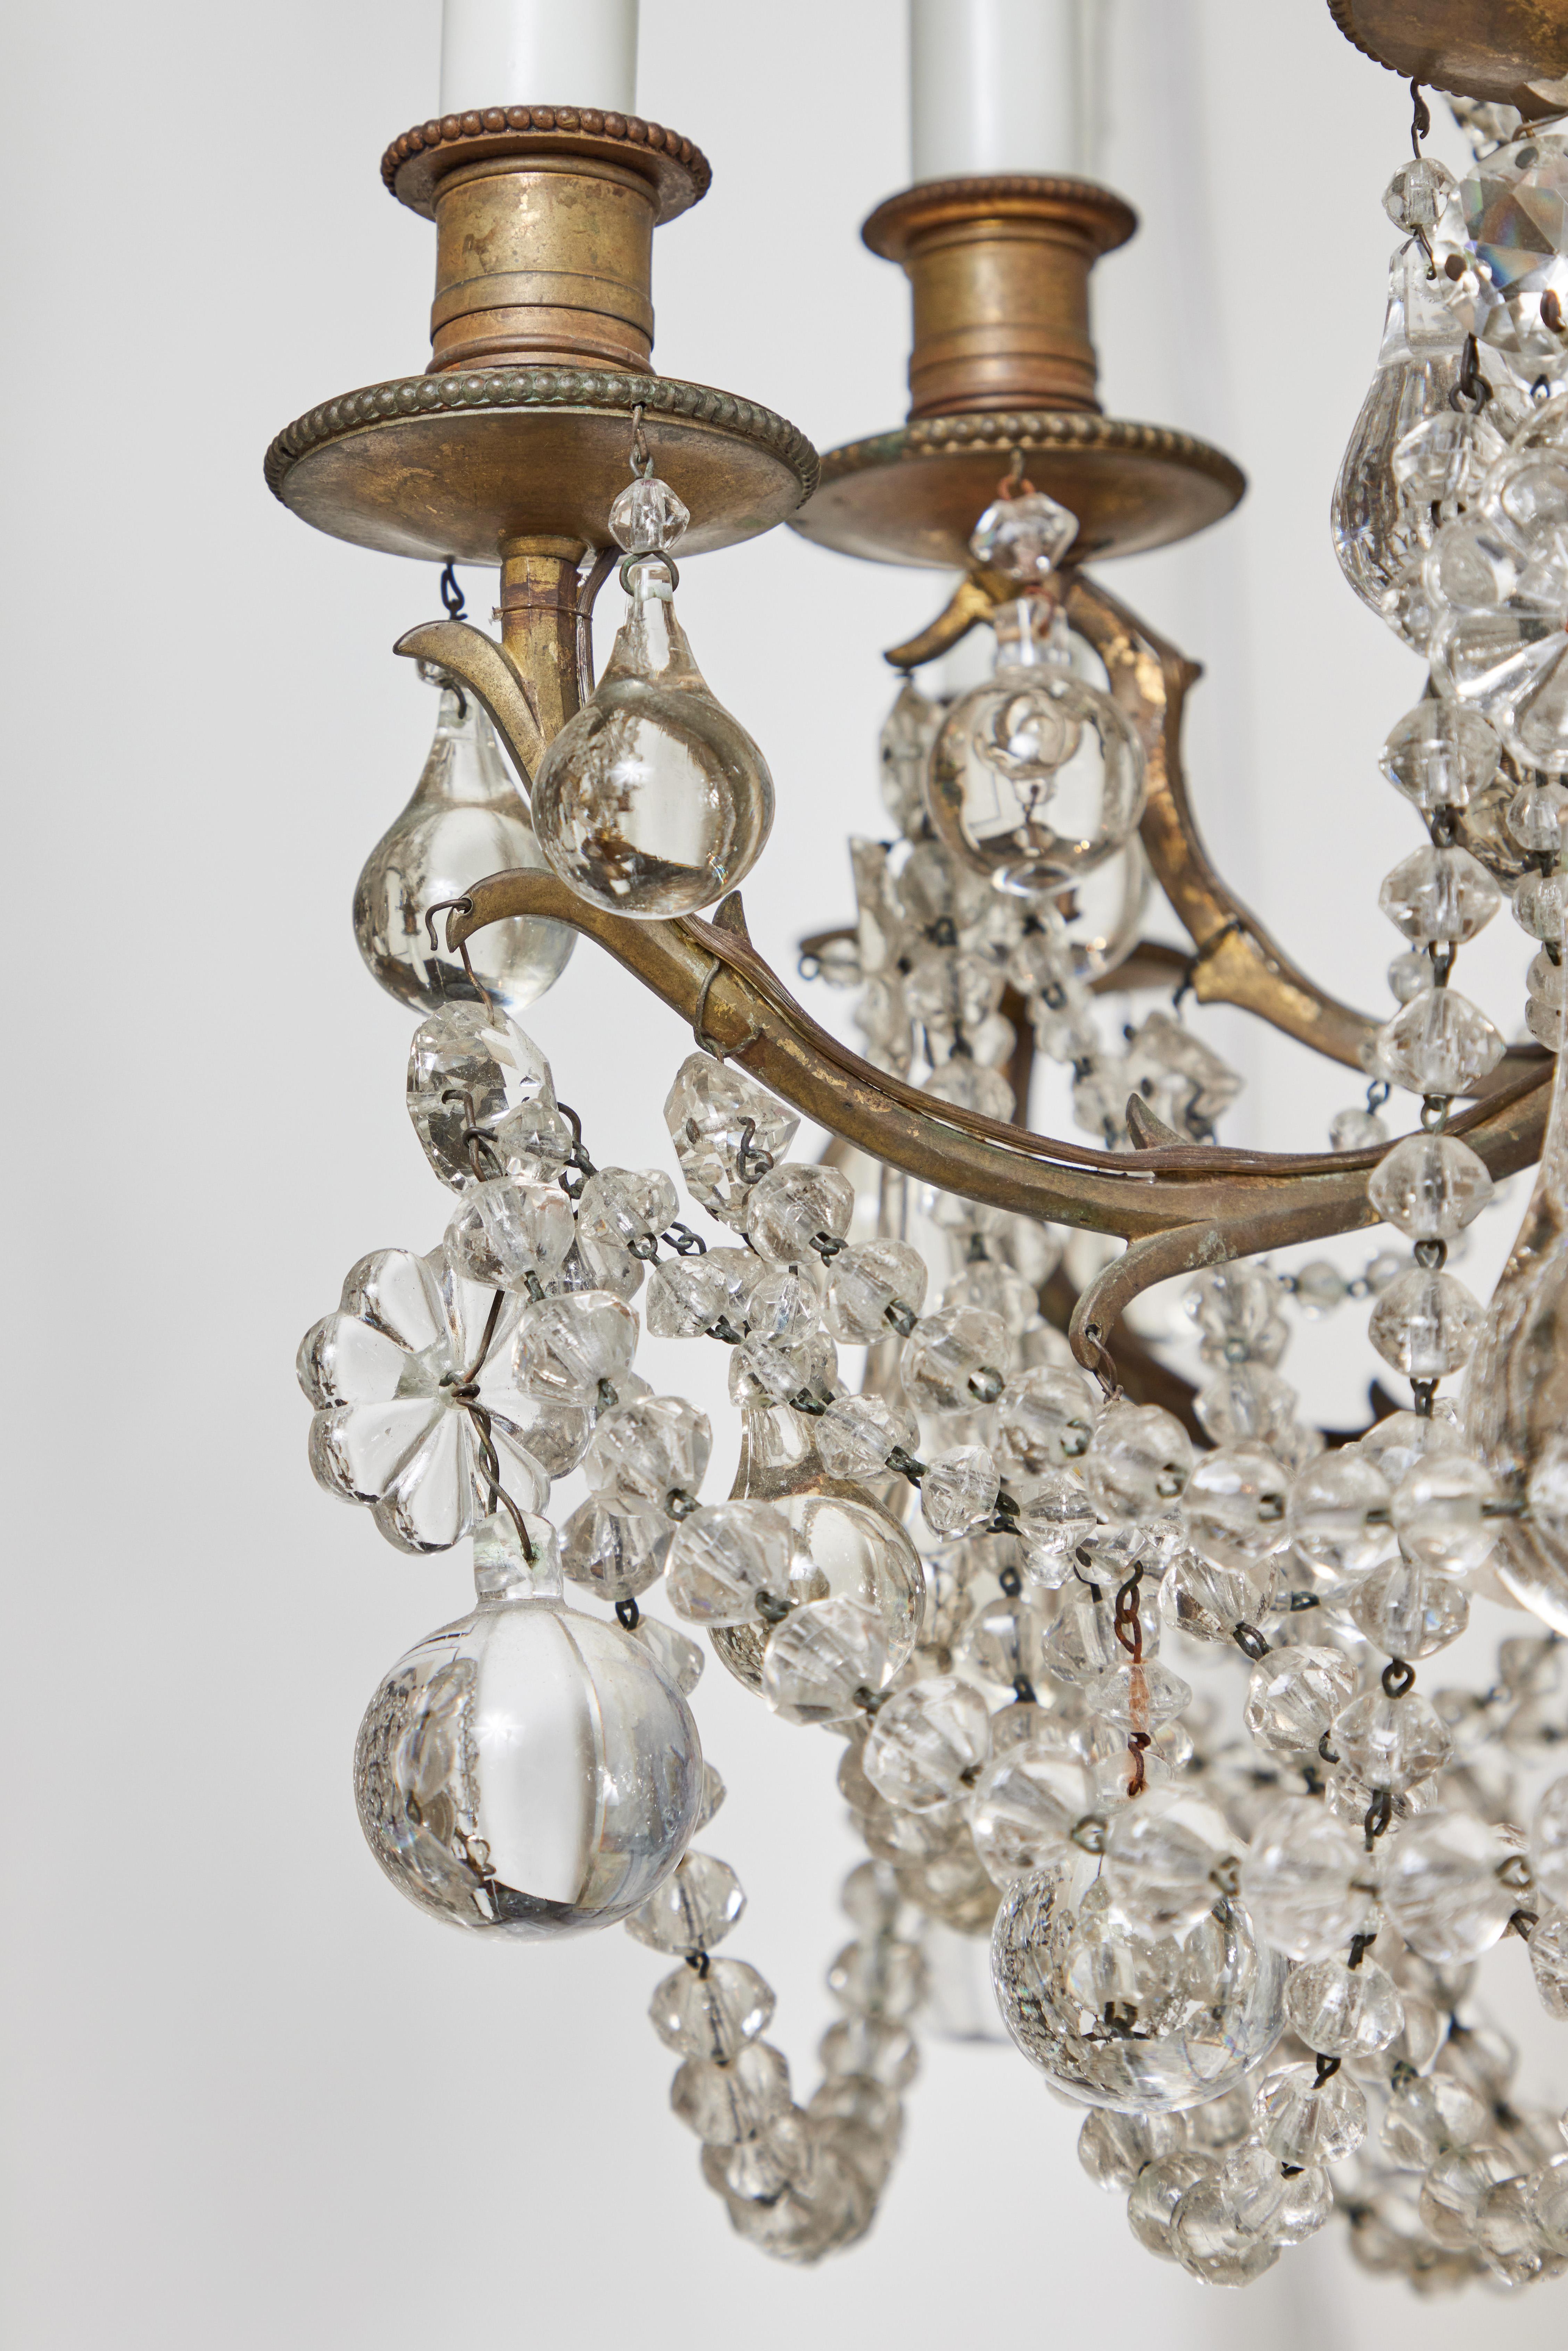 Absolument charmant, luxuriant, c. 1920 lustre italien avec un 12 lumière, chariot en bronze doré avec des bras en forme de branche. L'ensemble est rempli de guirlandes et de gouttes de cristal densément emballées. Câblé pour le courant américain.